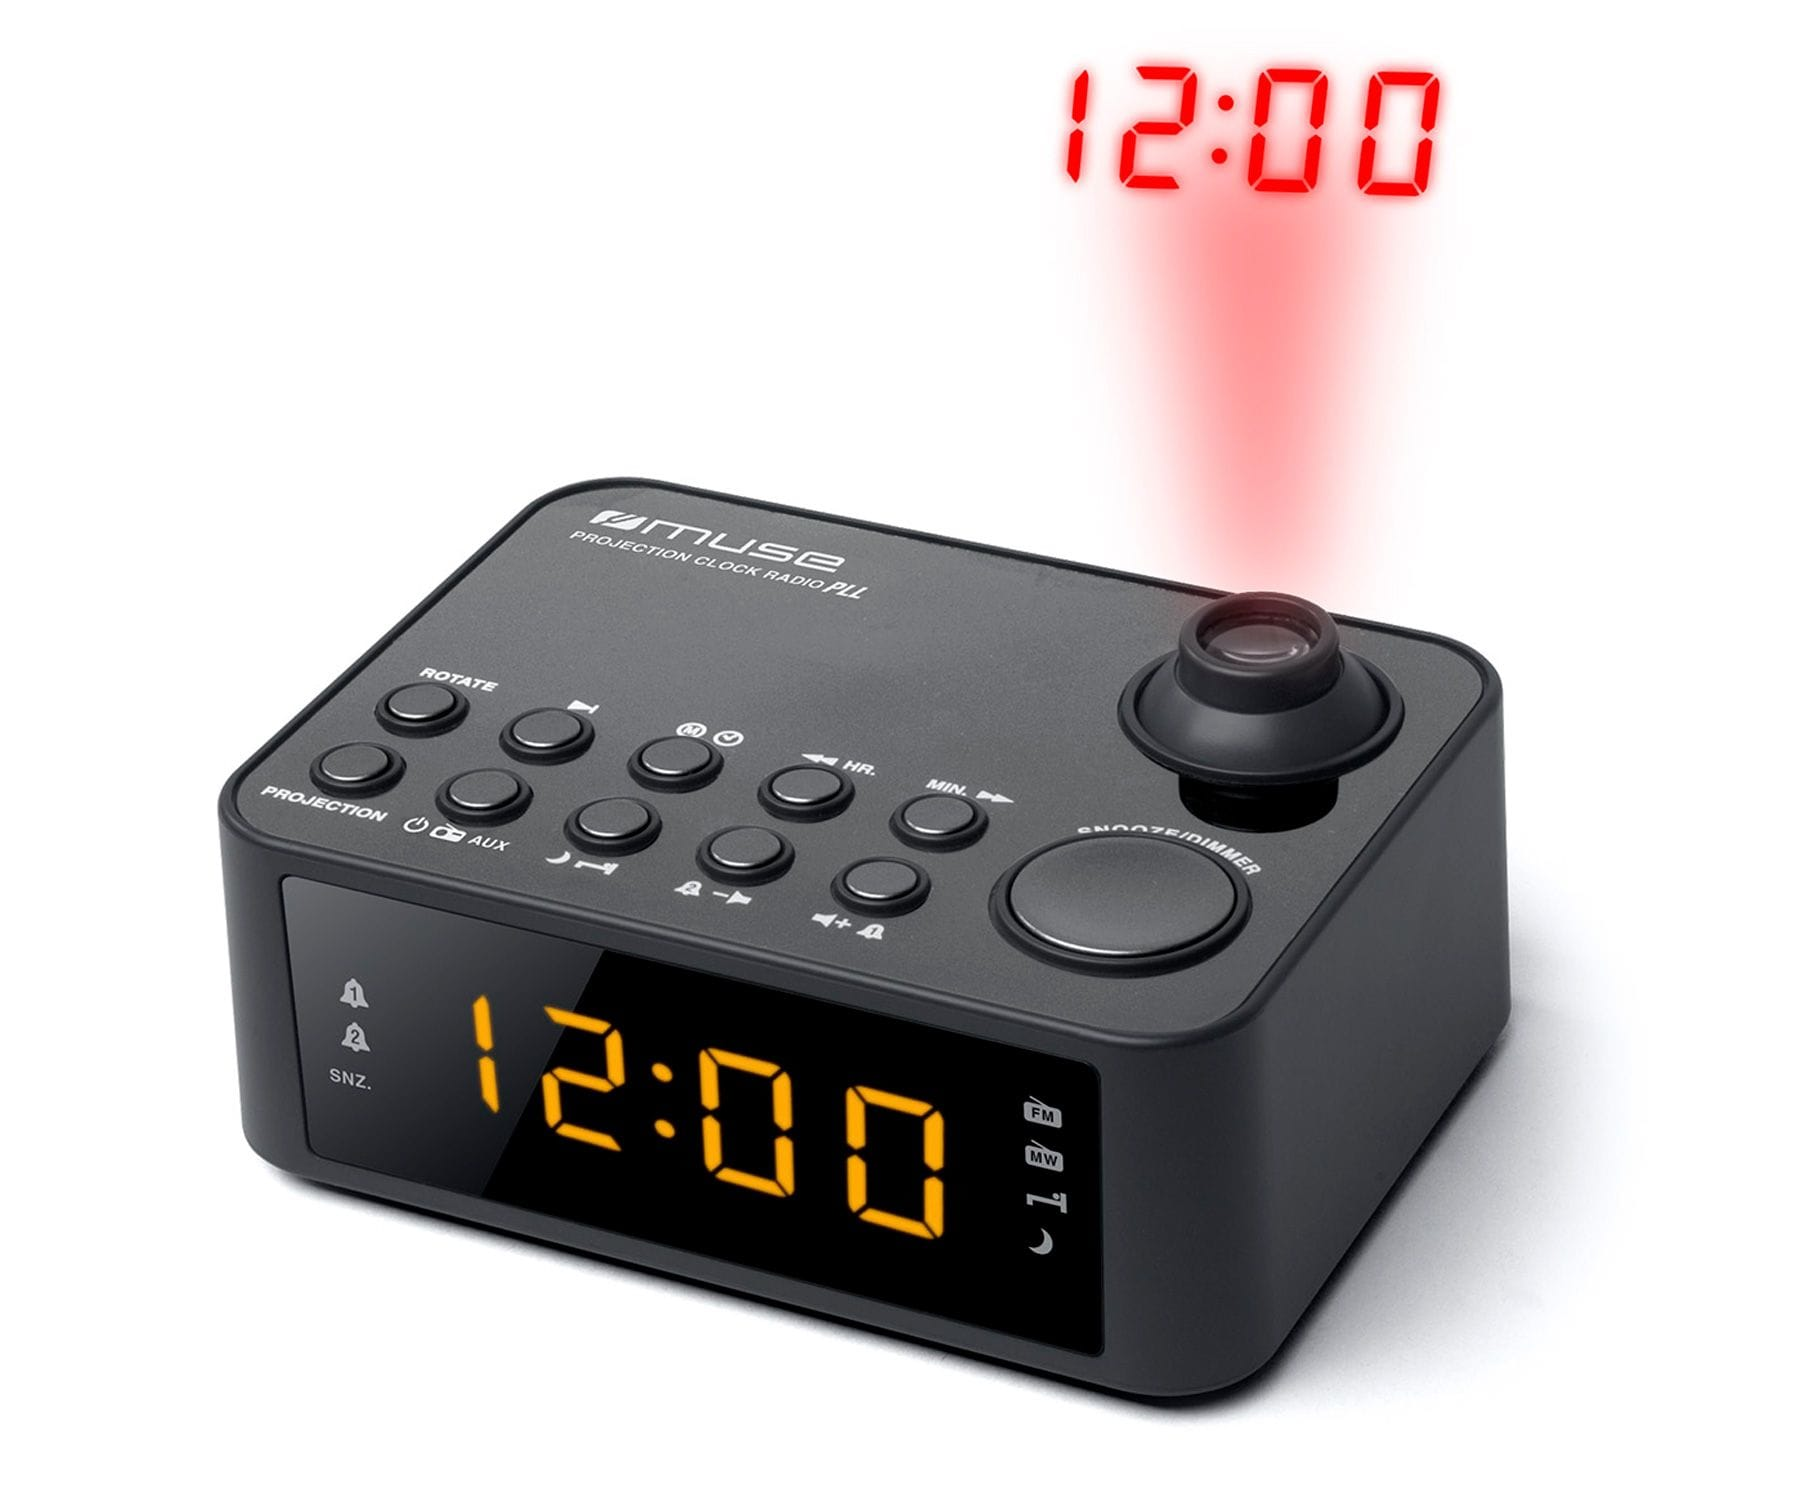 Muse M178 Reloj digital negro radio despertador fmmw corriente alarma doble snooze m178p con proyección amfm altavoz integrado proyector hora color mw 229 0.9